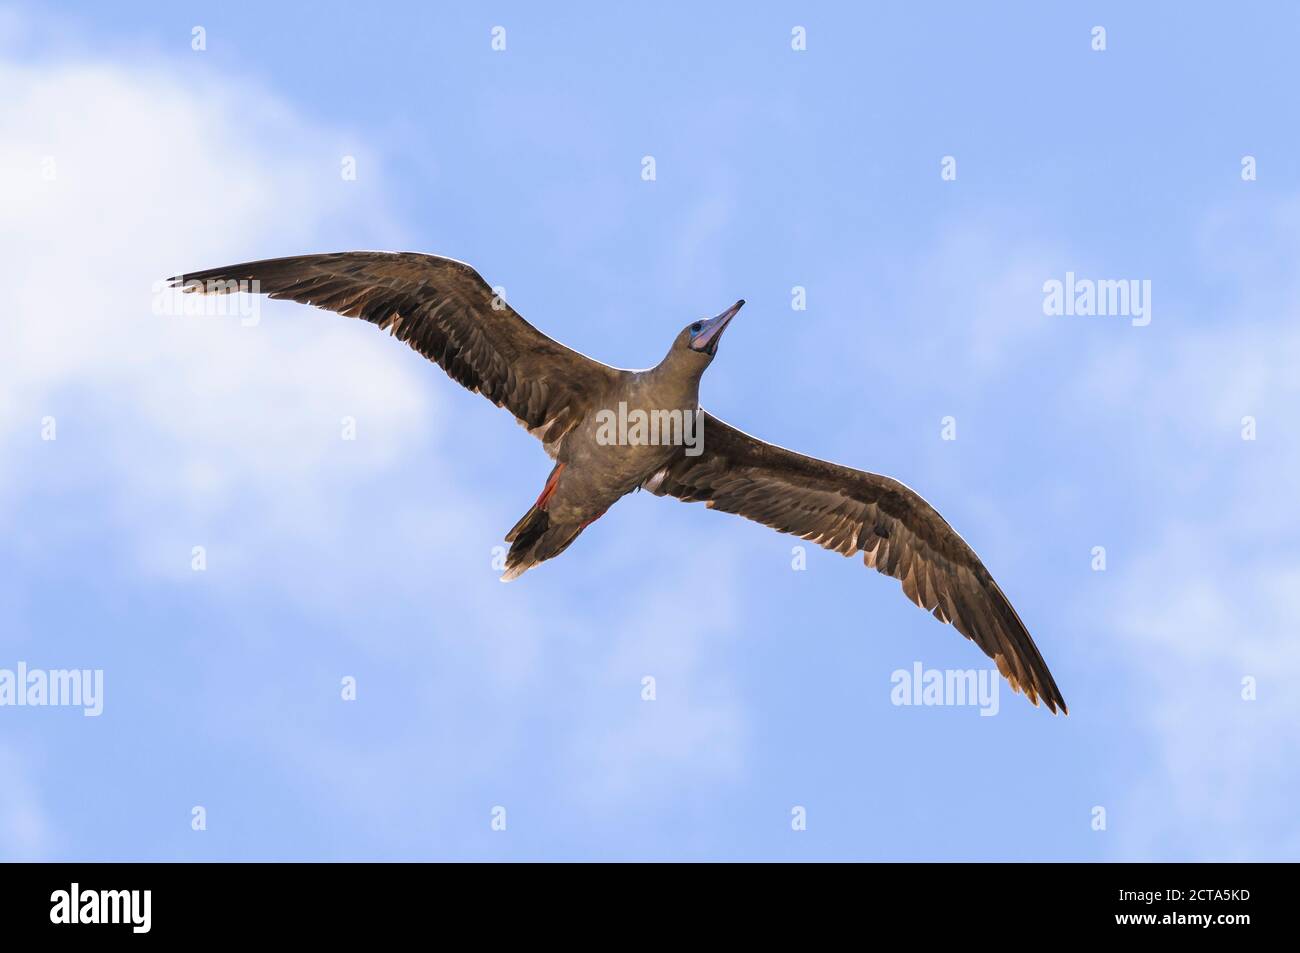 Ecuador, Galapagos, Genovesa, Red-footed Booby ,Sula sula, flying Stock Photo